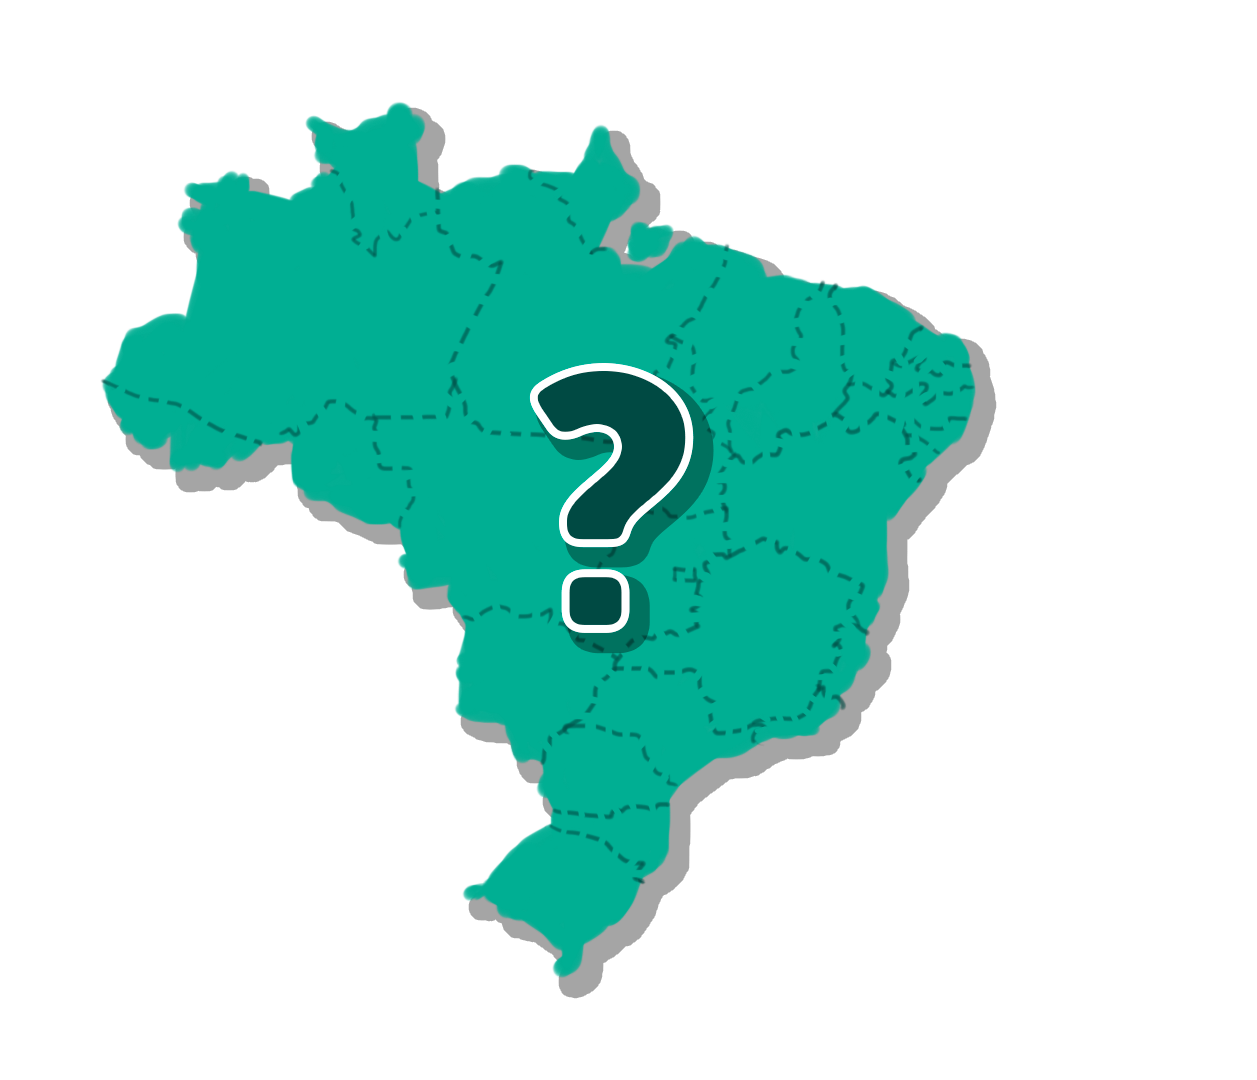 IBGE, Brasil em síntese, território